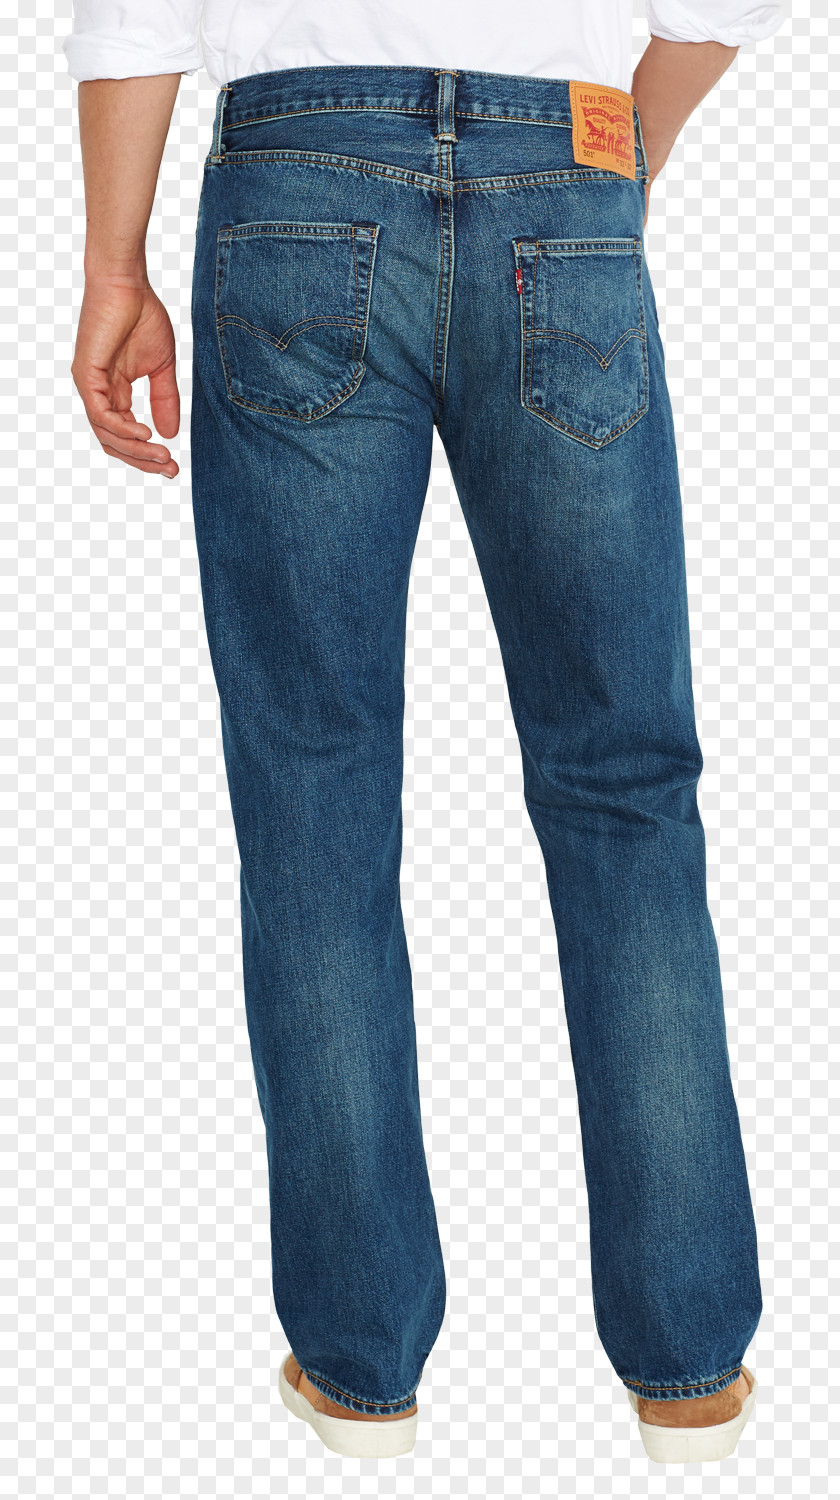 Levis Carpenter Jeans Levi's 501 Levi Strauss & Co. Slim-fit Pants PNG